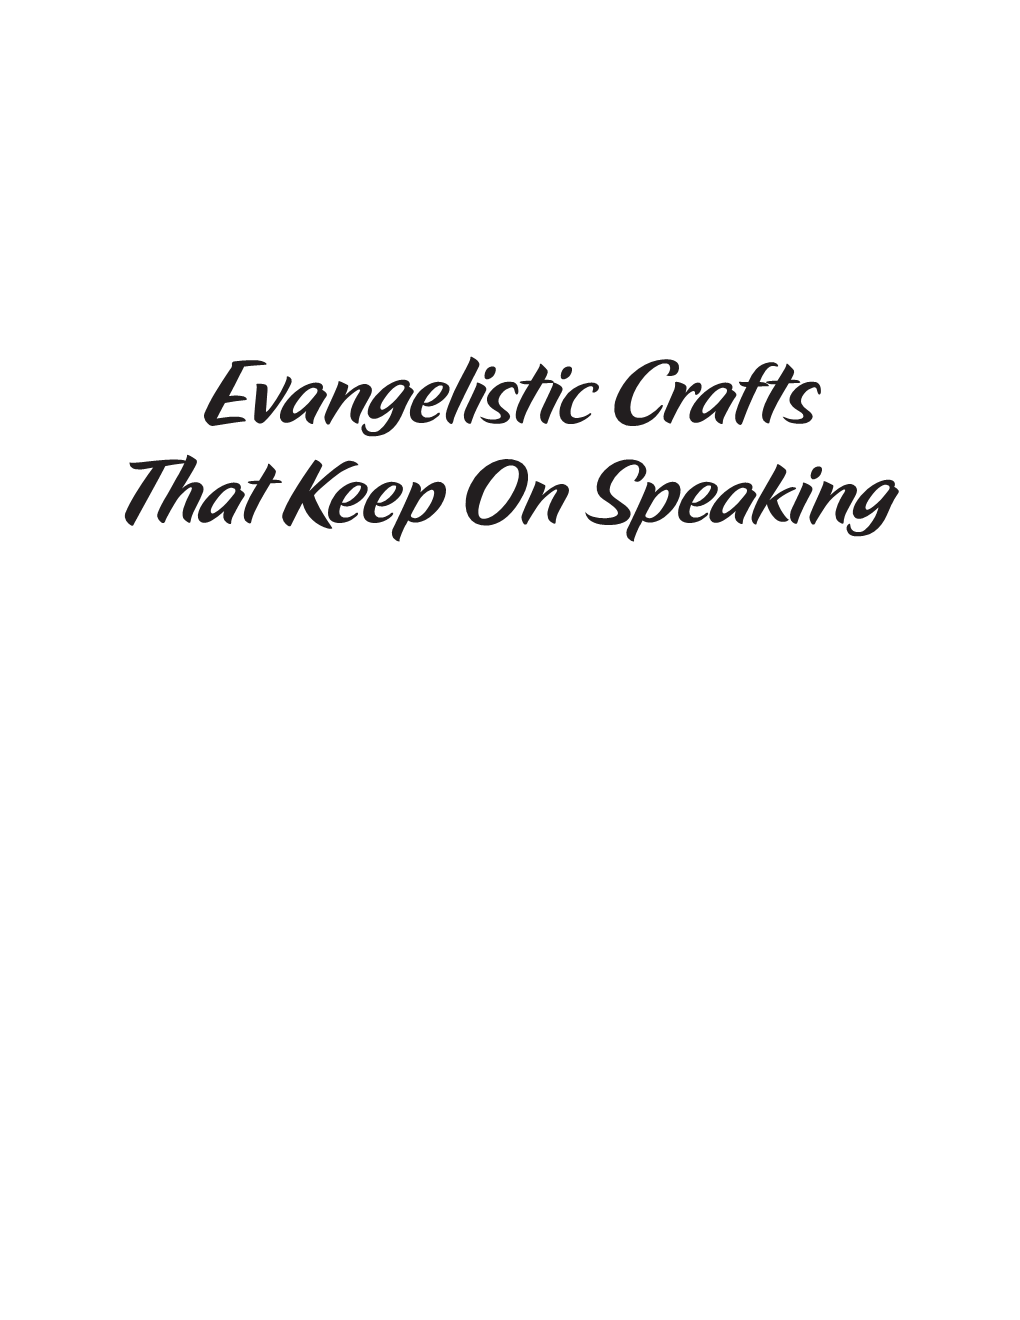 Evangelistic Crafts That Keep on Speaking